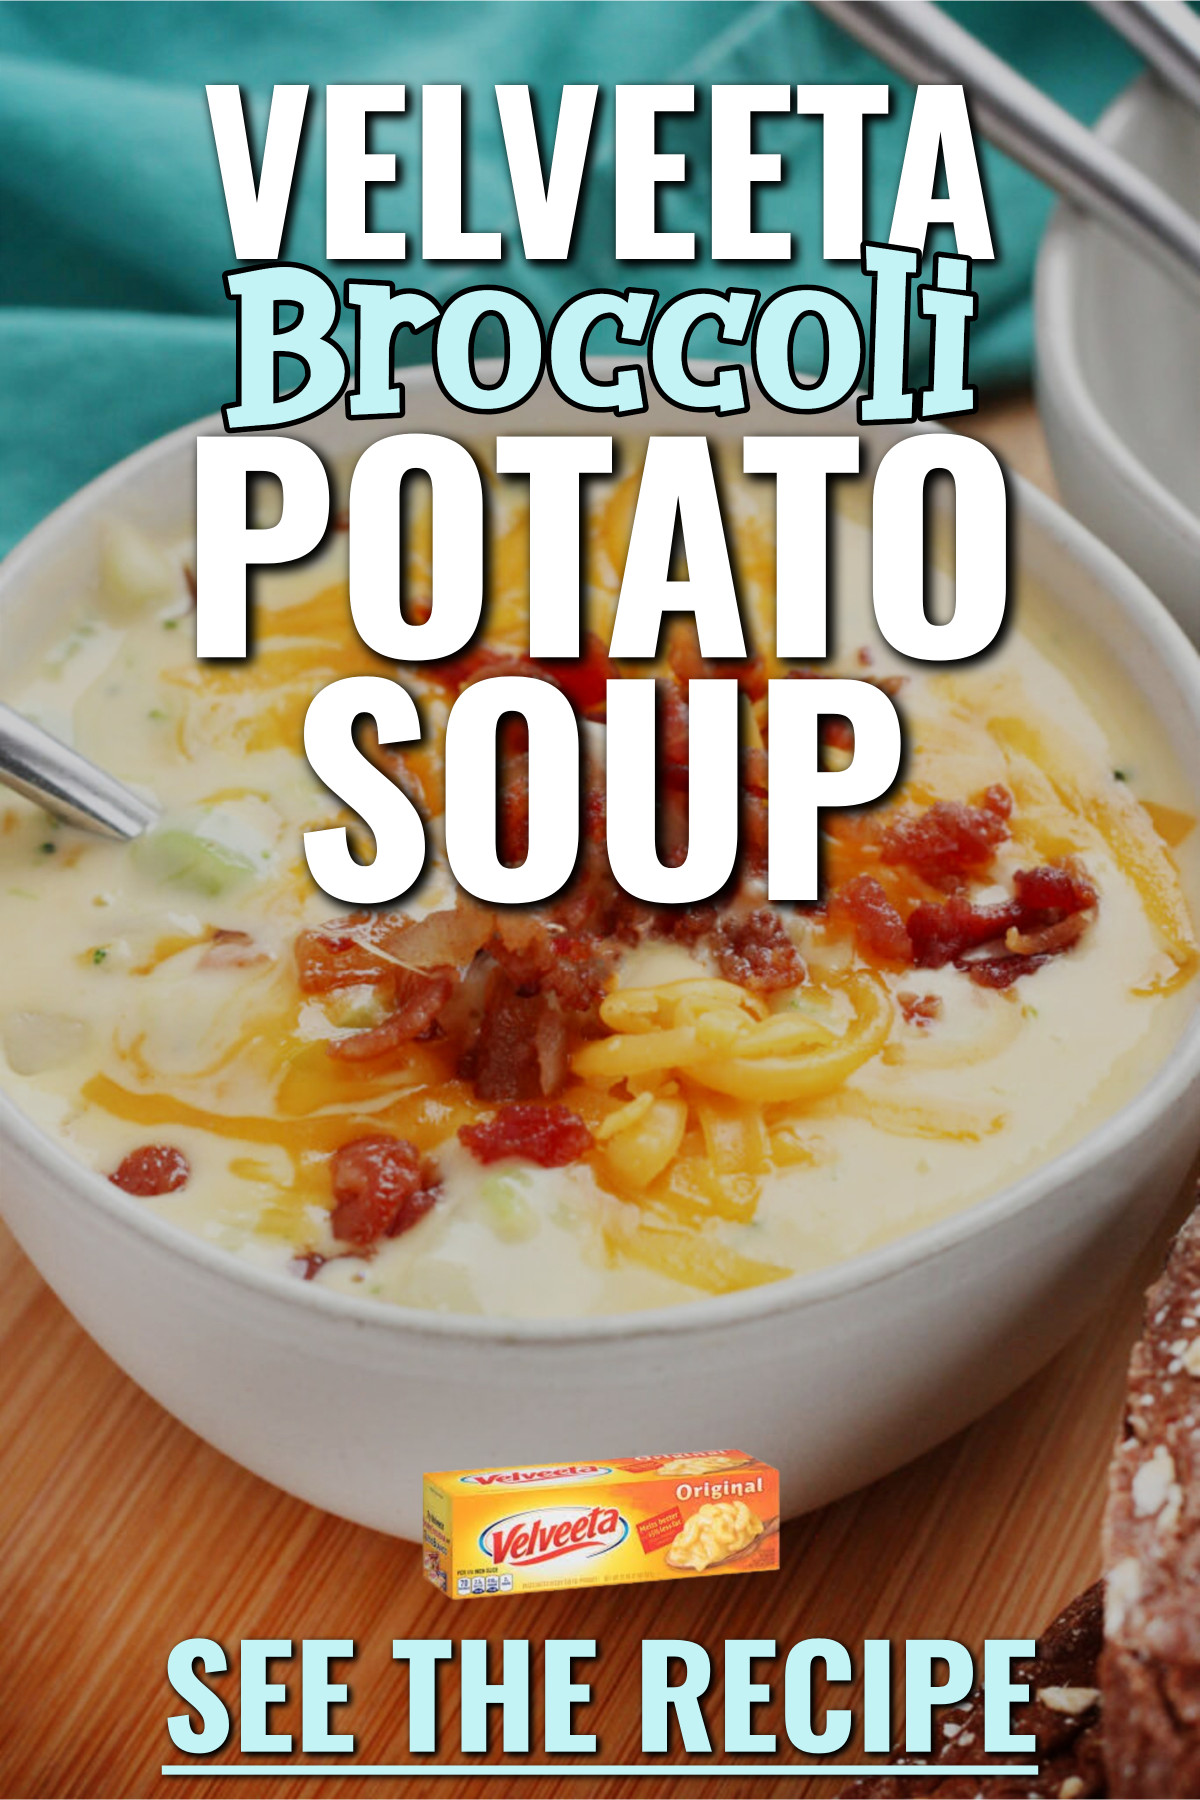 Velveeta Broccoli Potato Soup